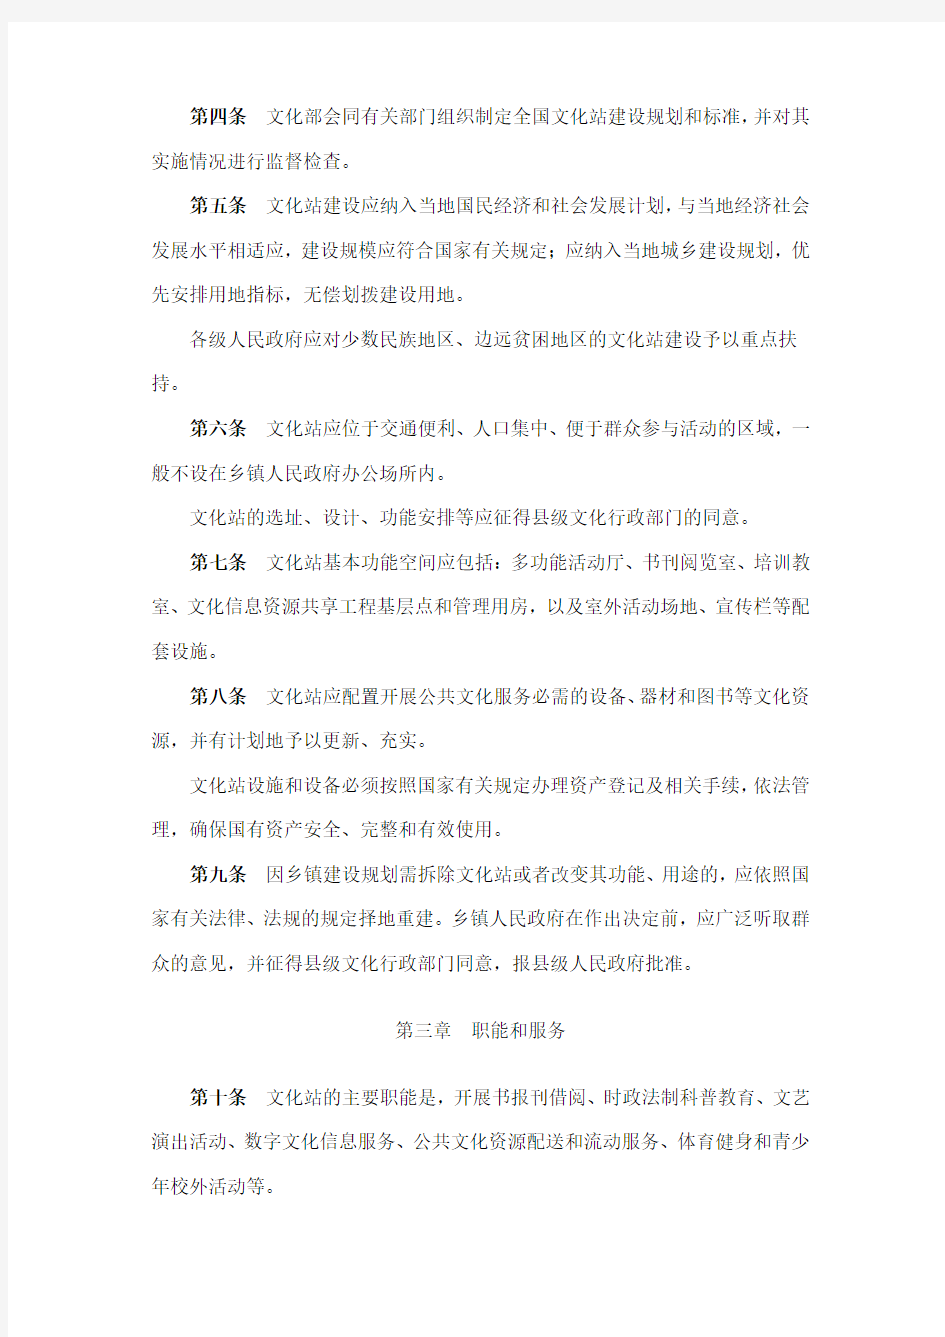 中华人民共和国文化部令《乡镇综合文化站管理办法》